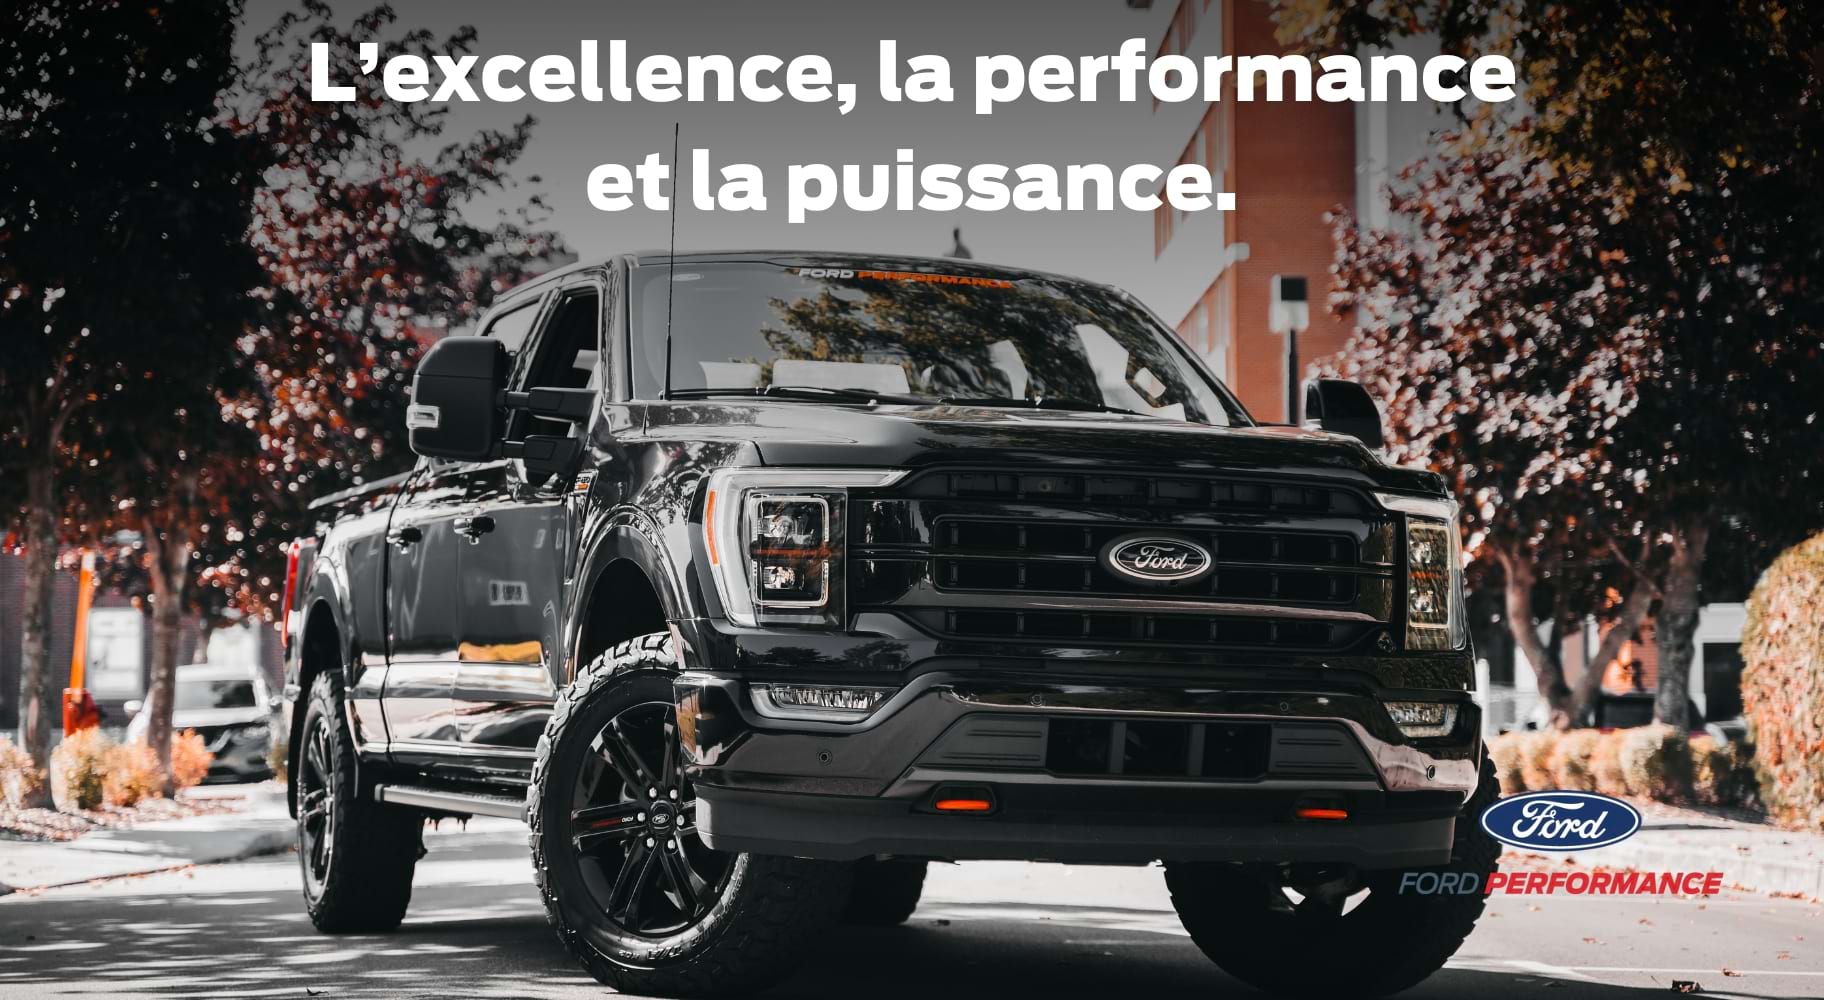 RImouski Ford, votre détaillant Ford Performance pour les pièces et accessoires Ford